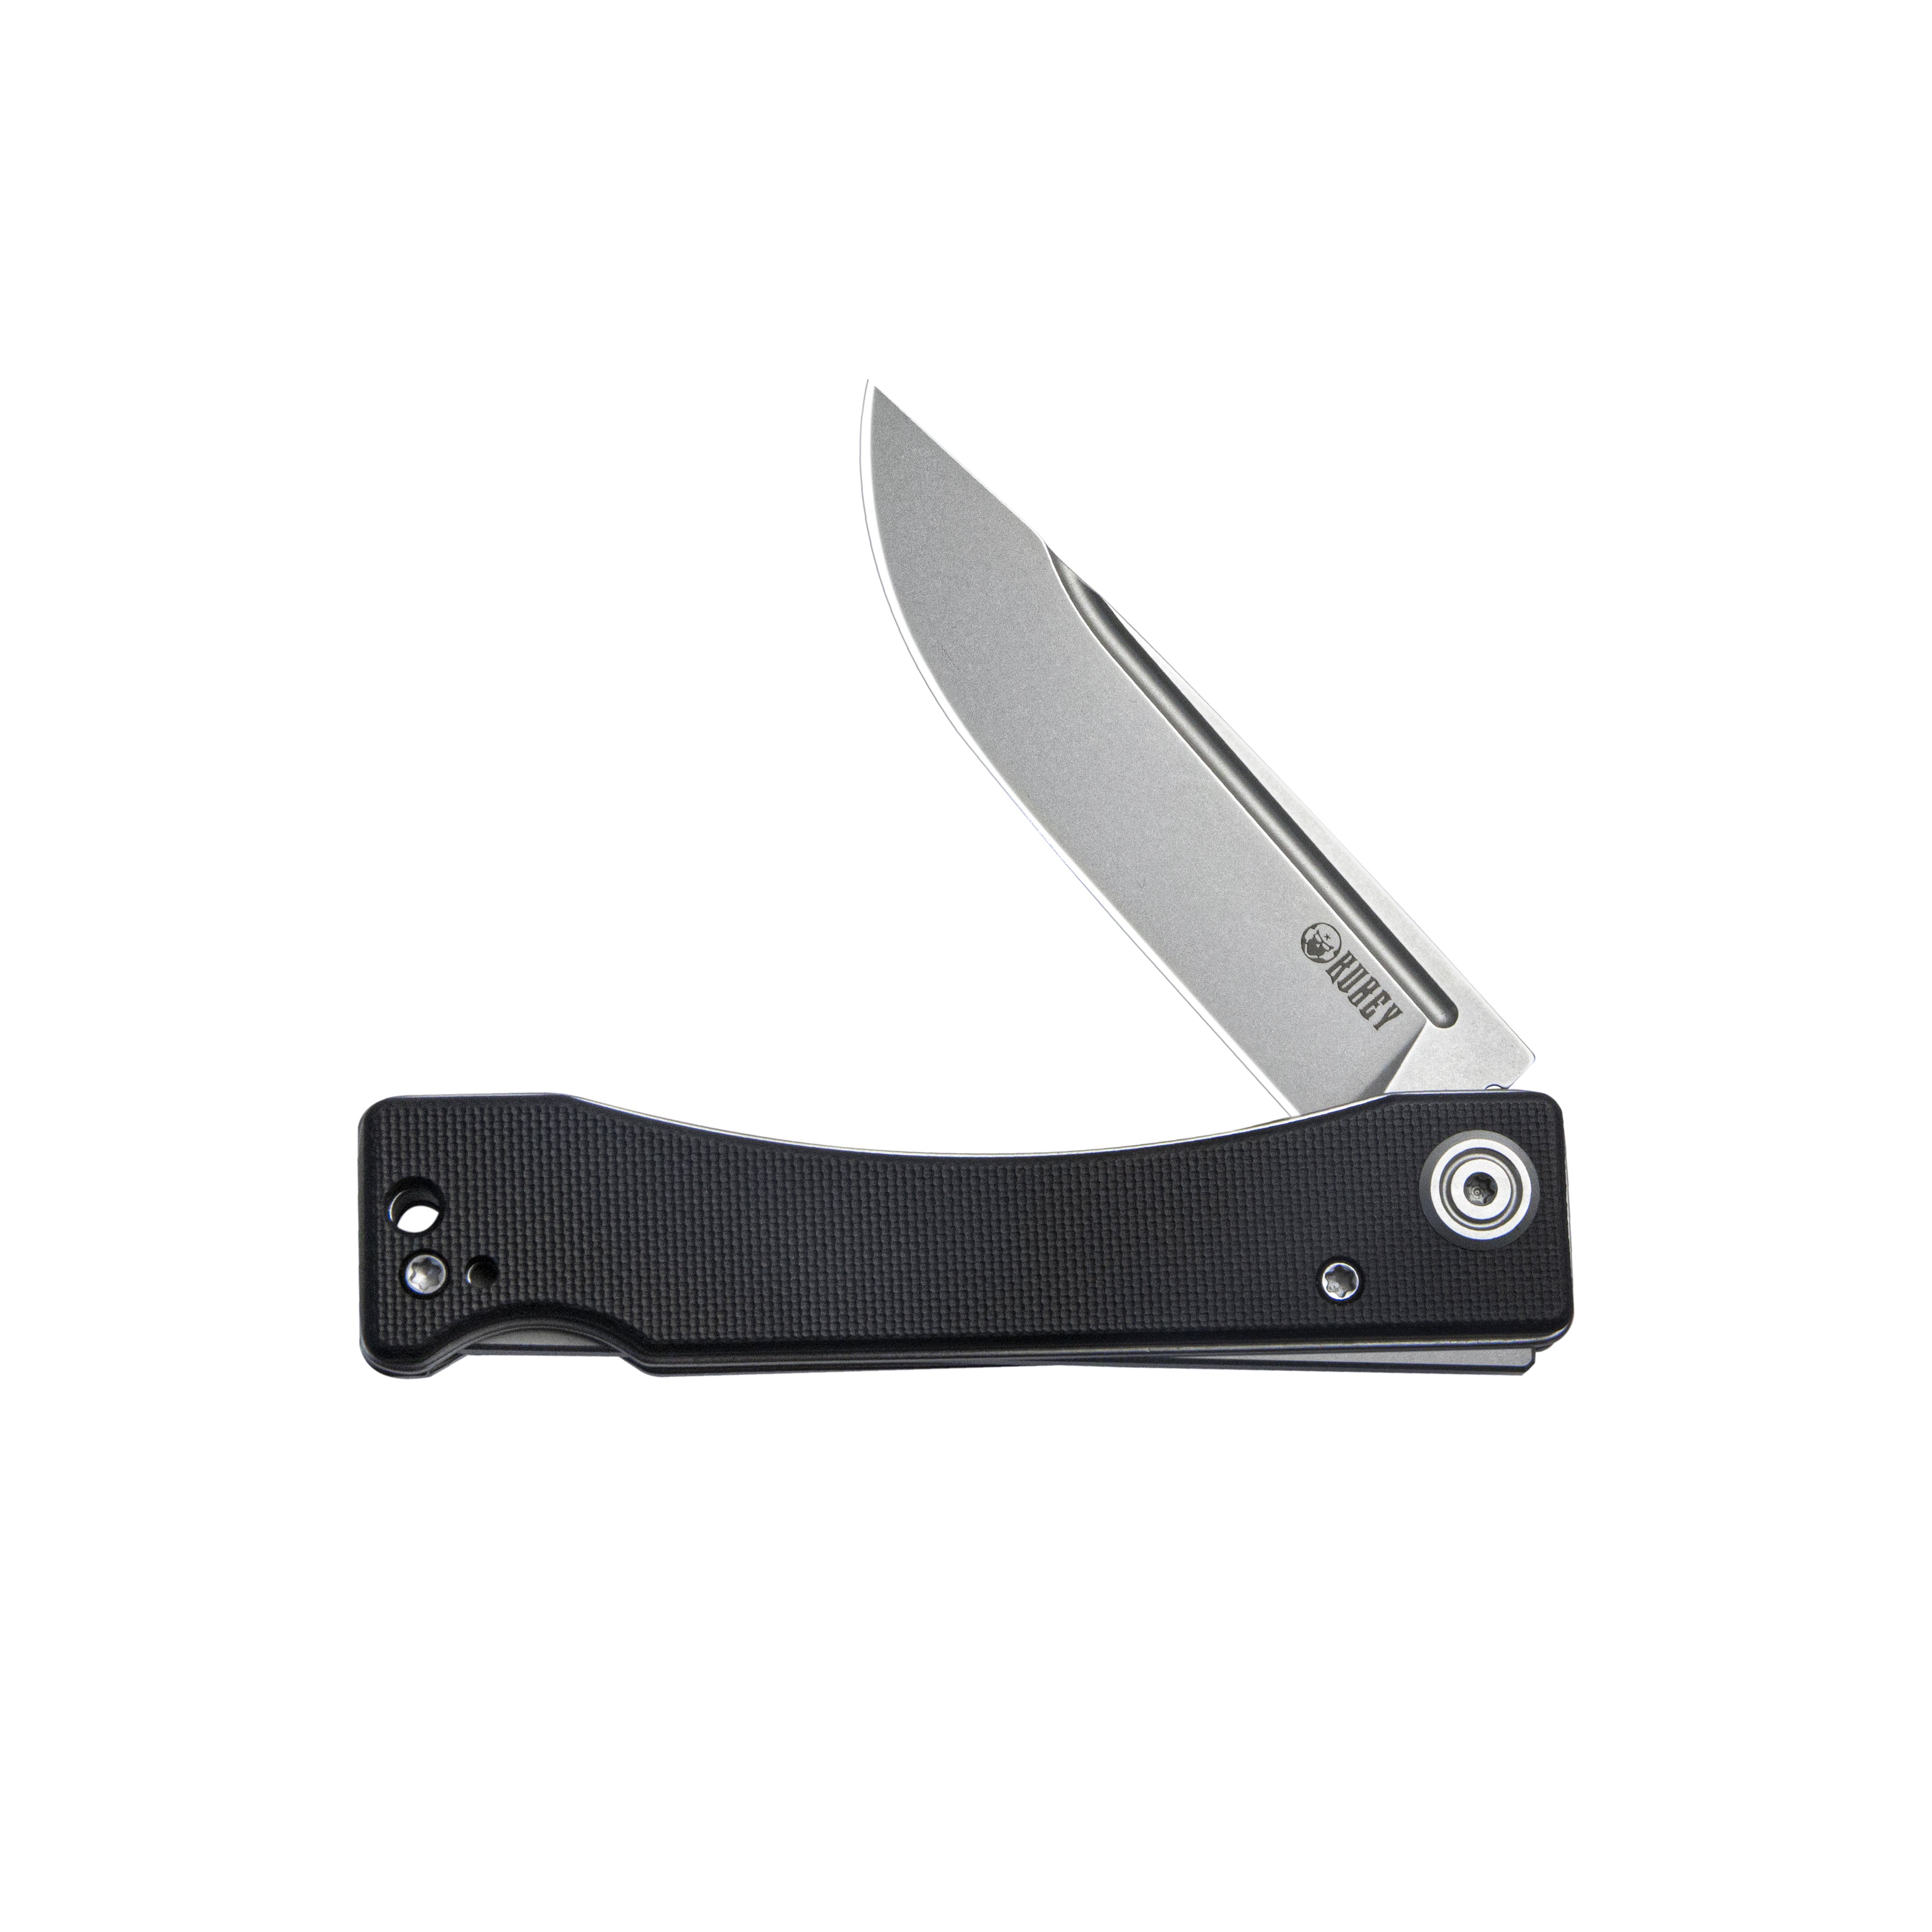 Kubey Akino Lockback Pocket Folding Knife Black G10 Handle 3.15" Bead Blasted Sandvik 14C28N KU2102A